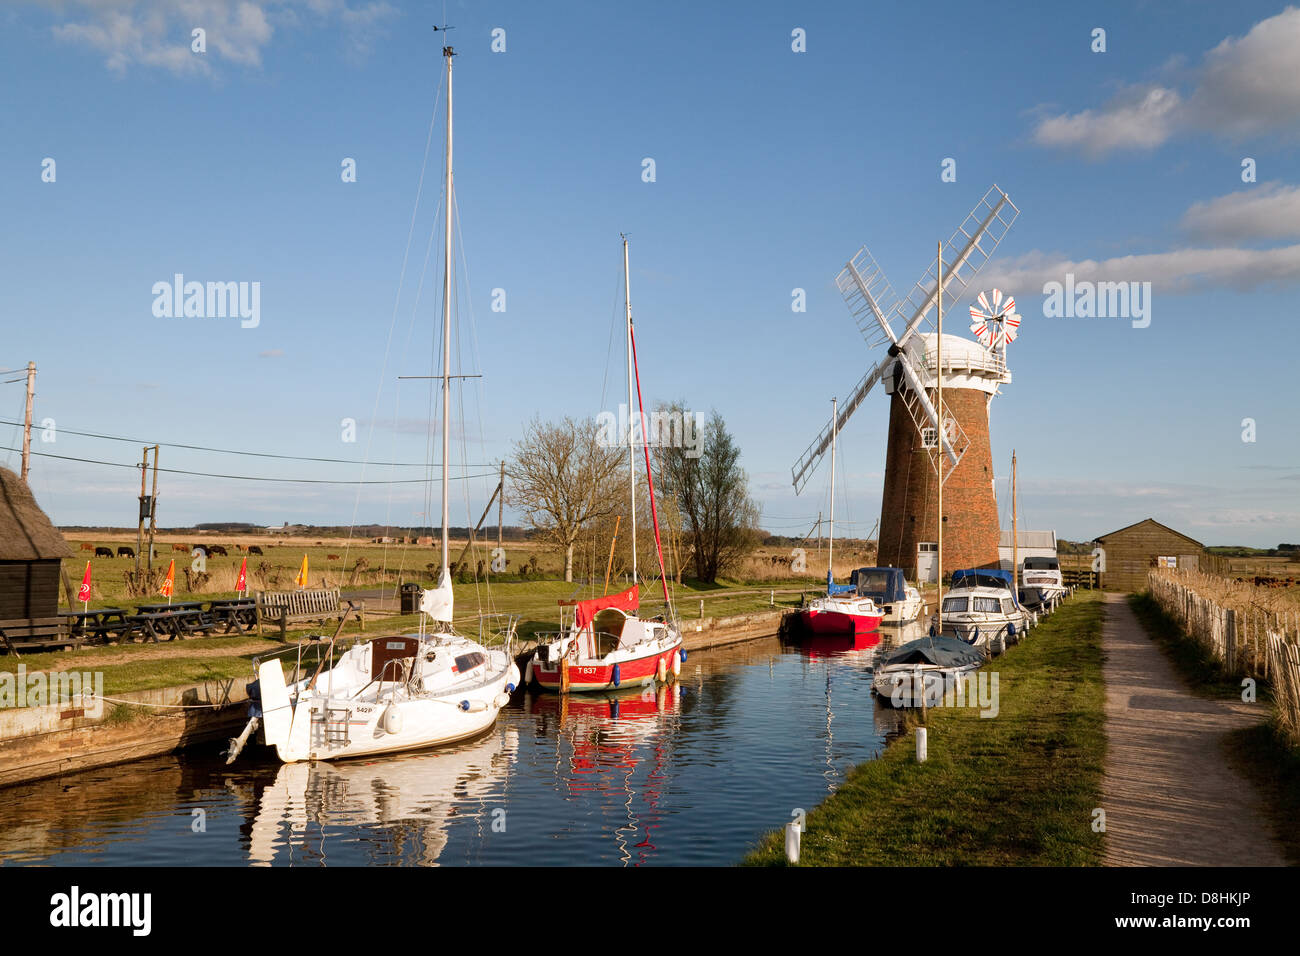 Moulin à vent, pompe pompe éolienne Horsey et bateaux, Norfolk Broads, England, UK Banque D'Images